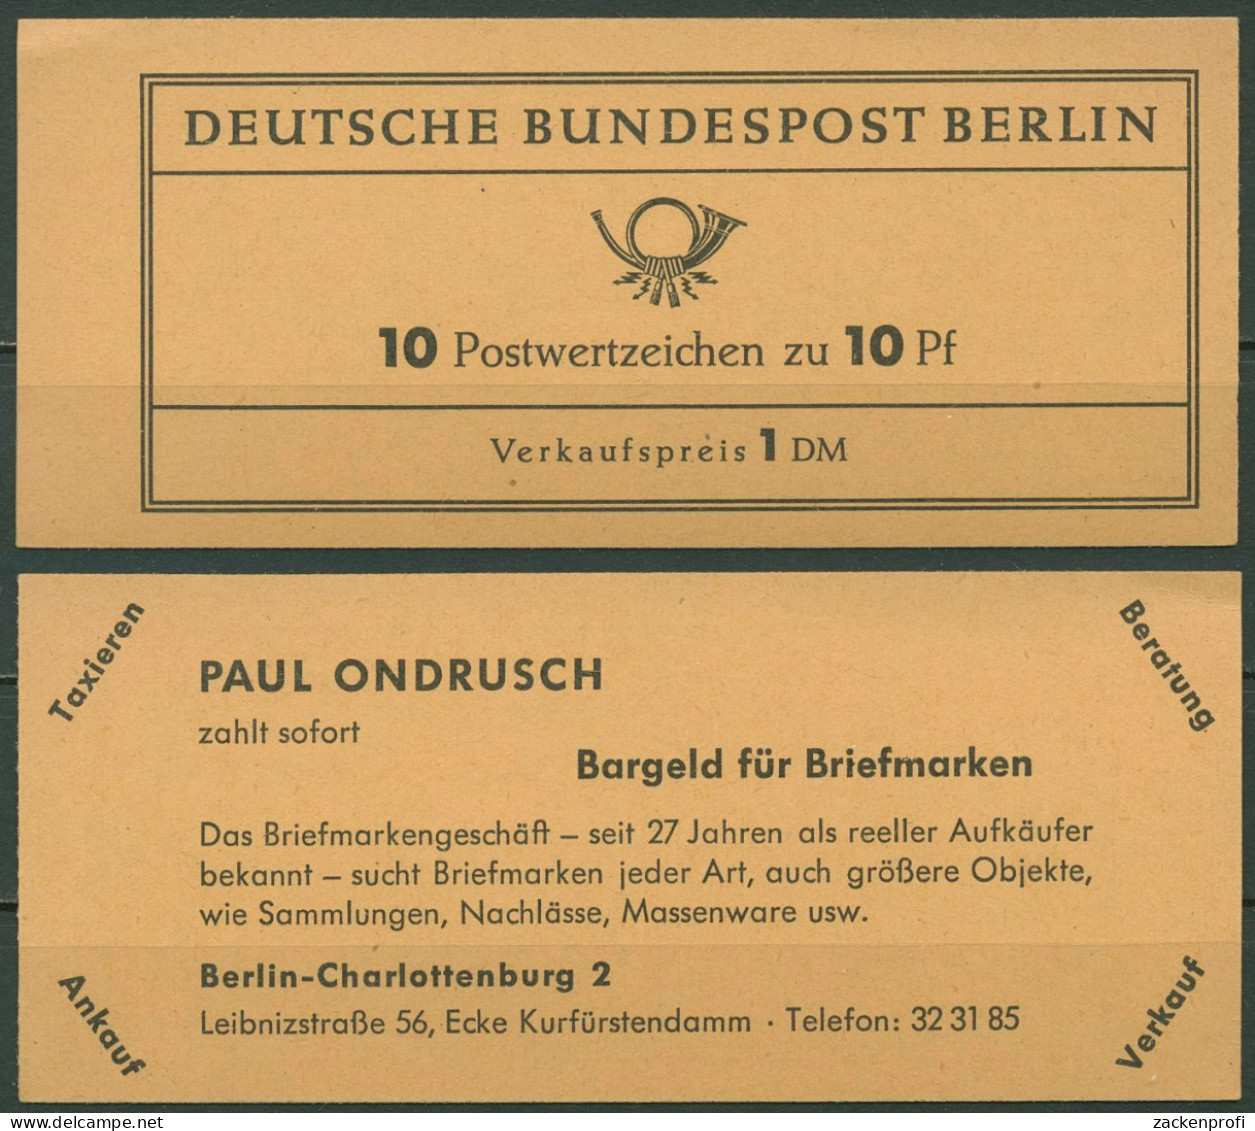 Berlin Markenheftchen 1962 Dürer MH 3a RLV VI Postfrisch - Postzegelboekjes